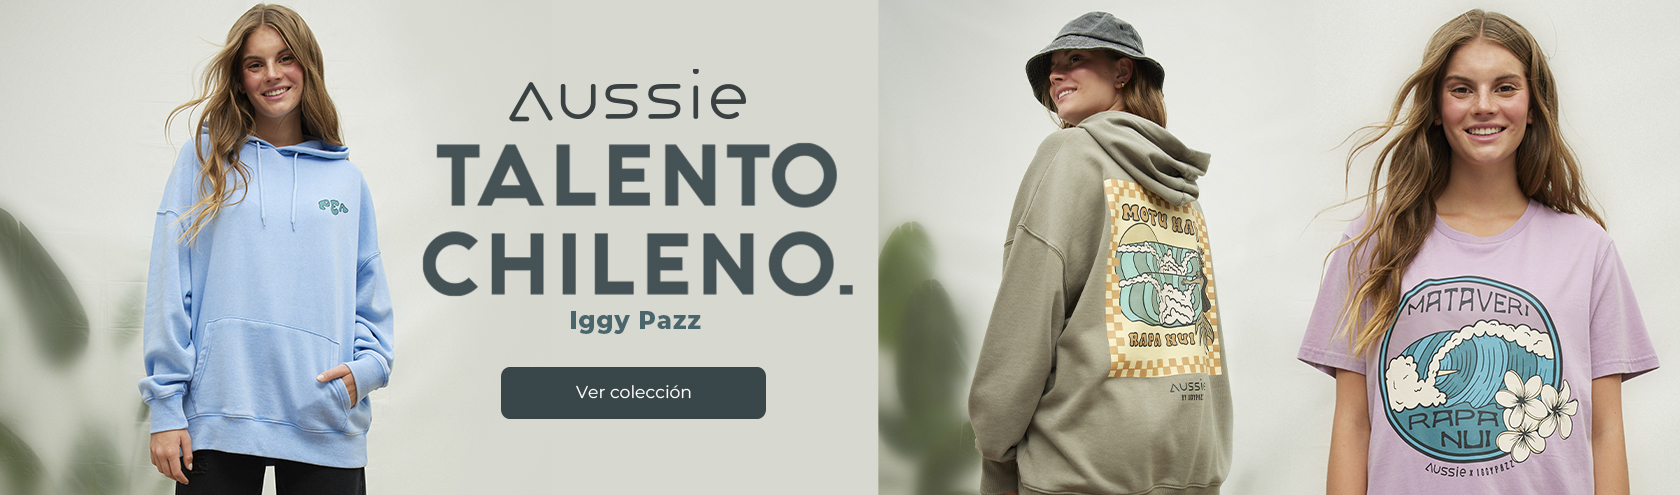 Aussie Talento chileno Iggy Pazz